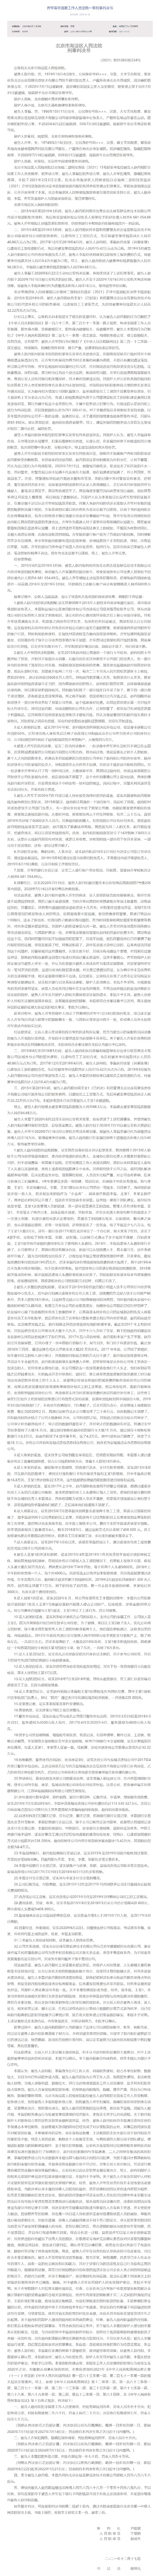 快手原副总裁赵丹阳受贿 涉案金额合计756万余元